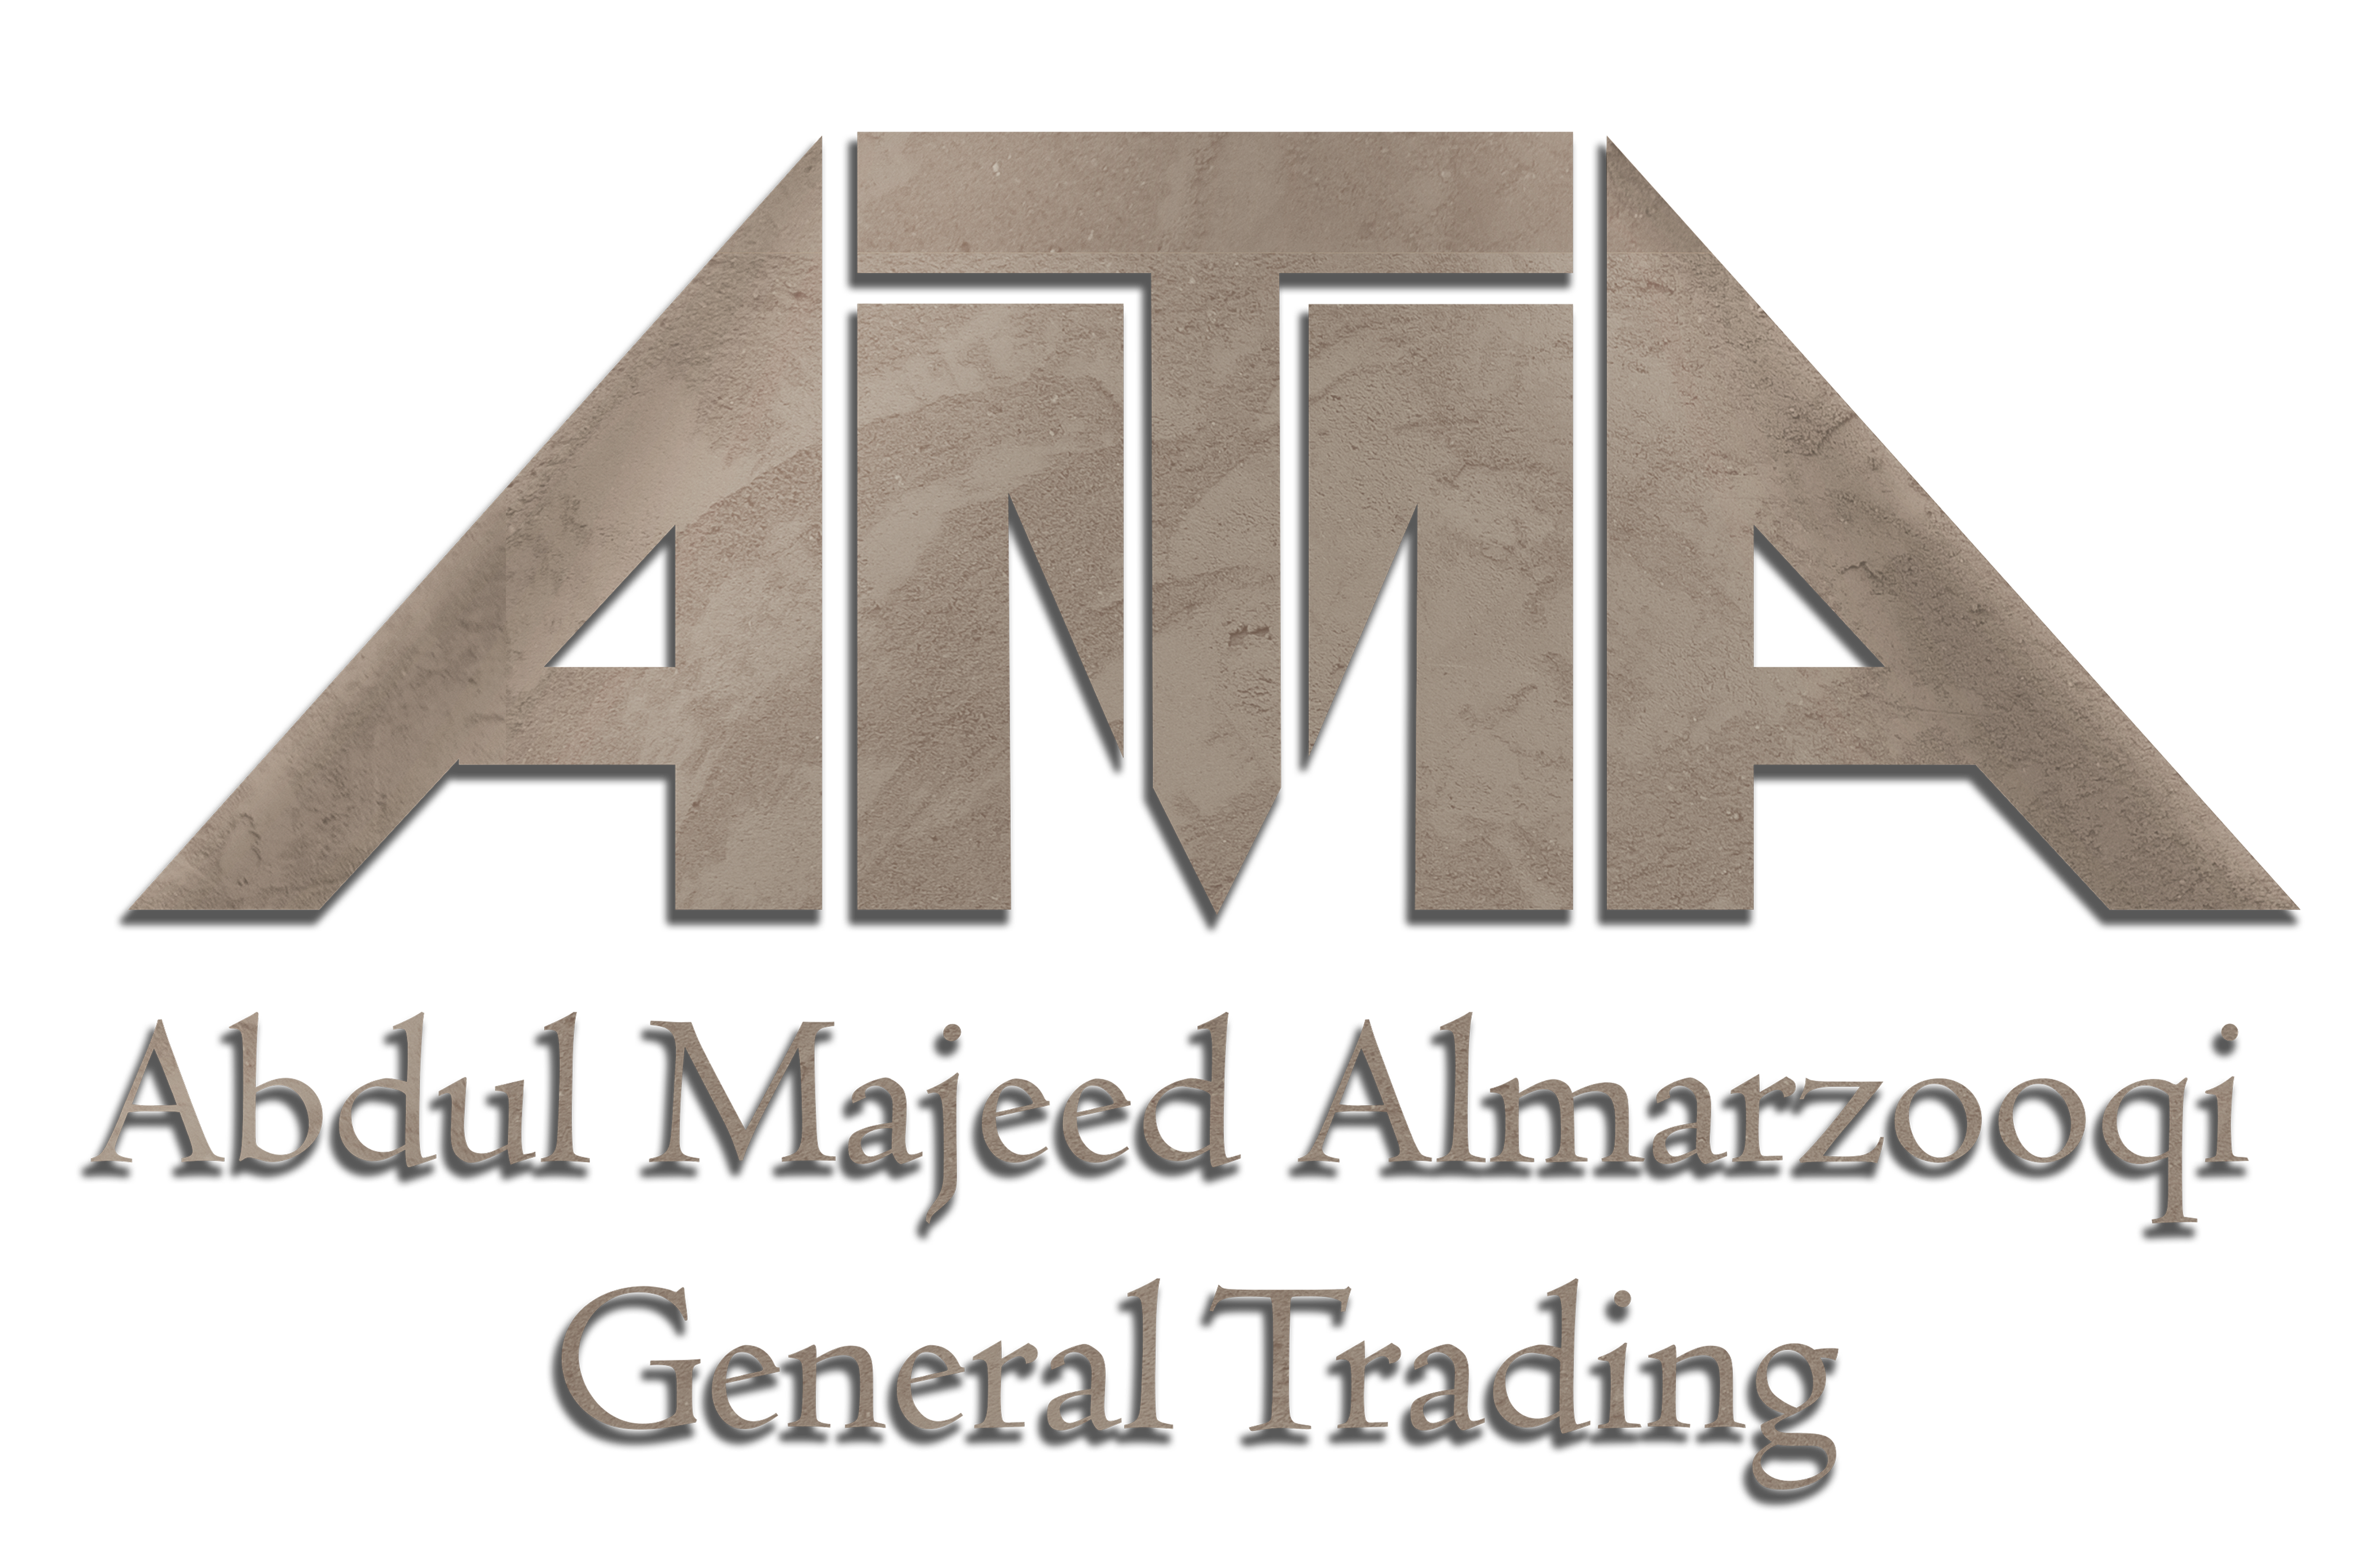 Abdul Majeed Al Marzooqi General Trading